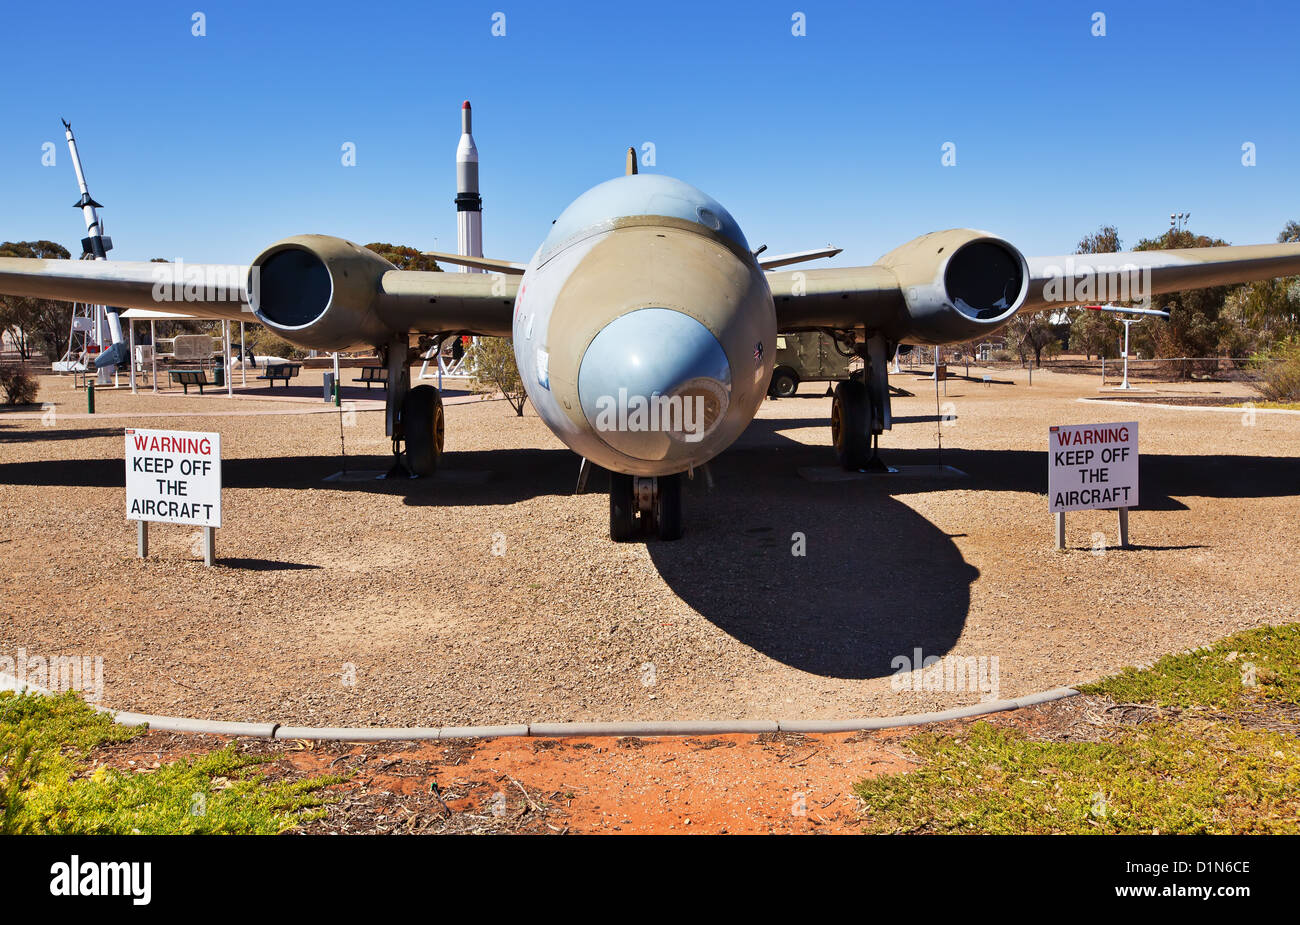 Fusées d'affichage de l'ombre historique de l'histoire parc fusée Rocket heritage park Australie du Sud de Woomera meteor chasseur à réaction Banque D'Images